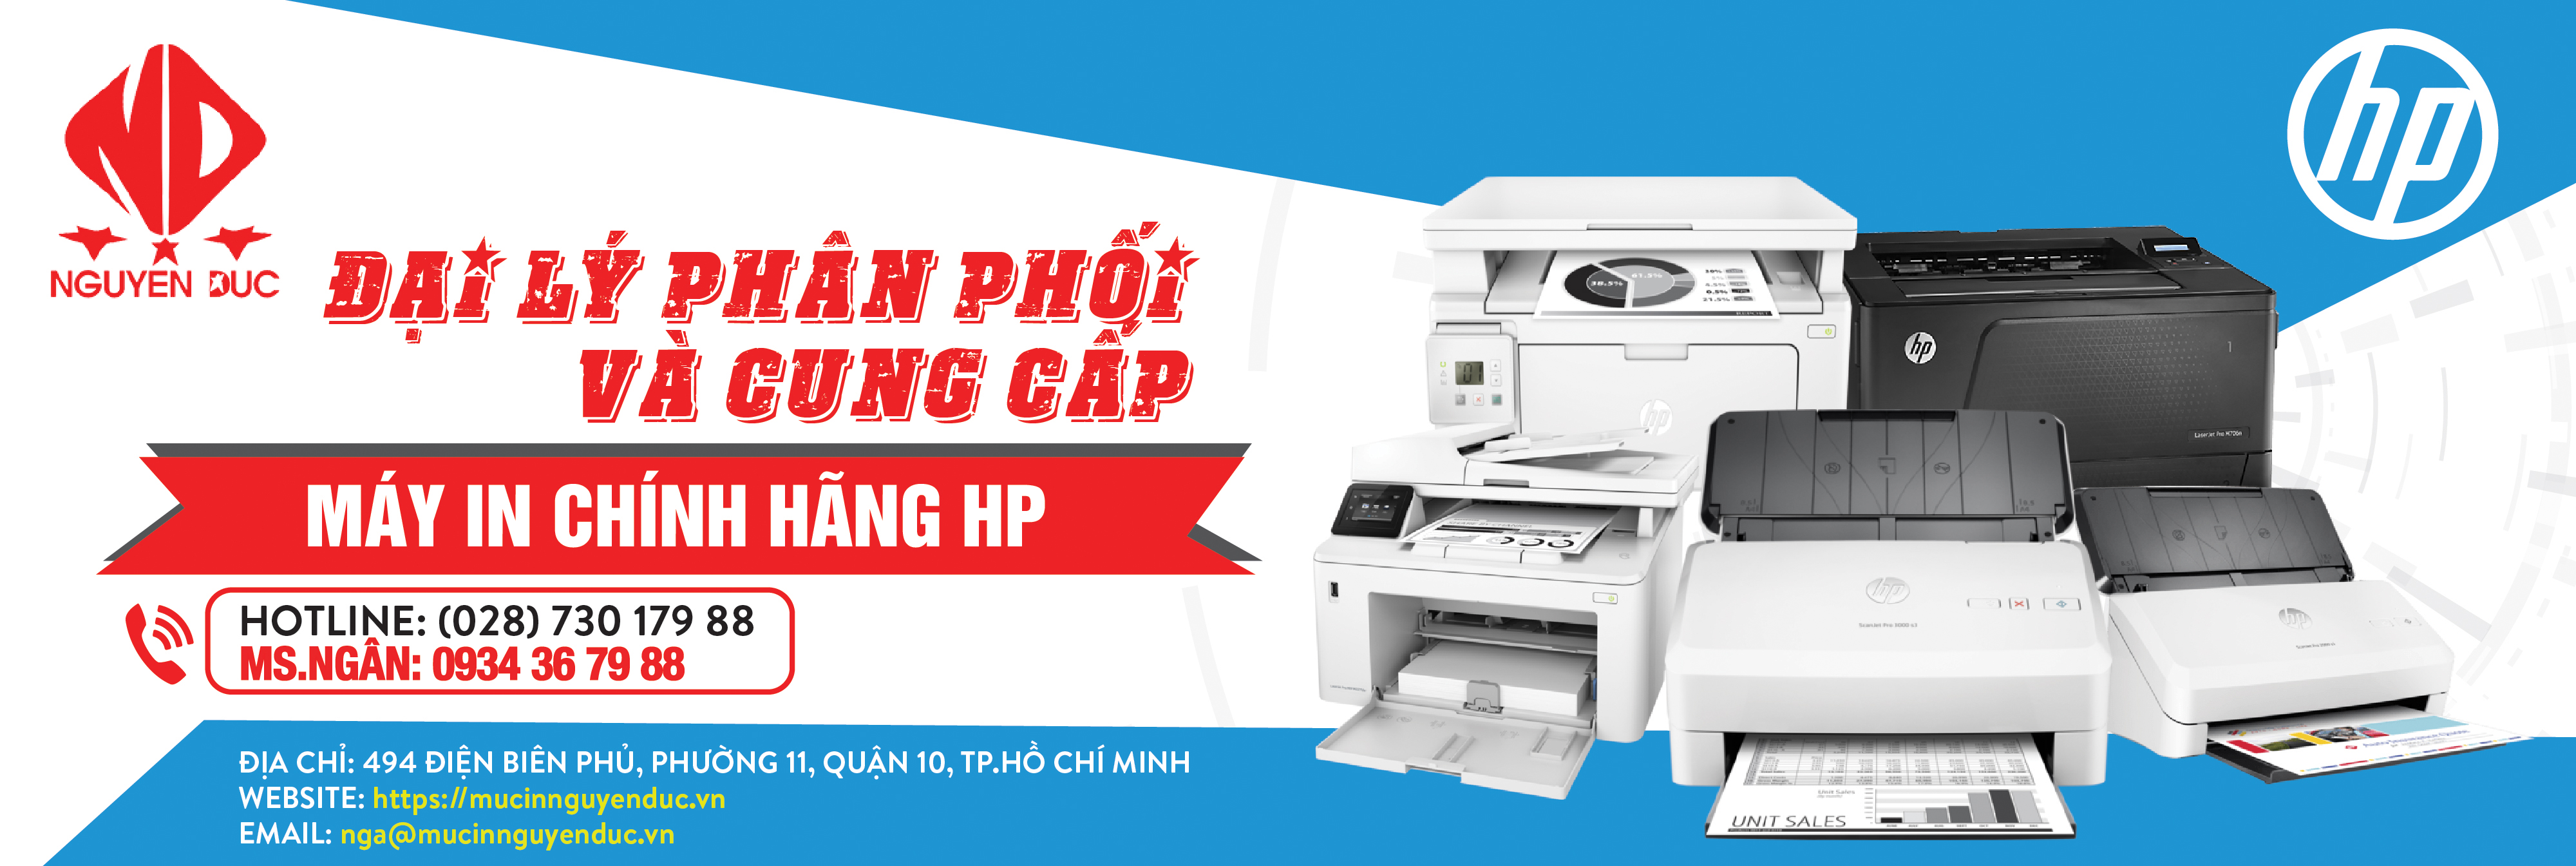 Đại lý phân phối máy quét tài liệu đảo mặt Epson WorkForce DS-570WII - chính hãng, giao hàng tại huyện Củ Chi, thành phố Hồ Chí Minh